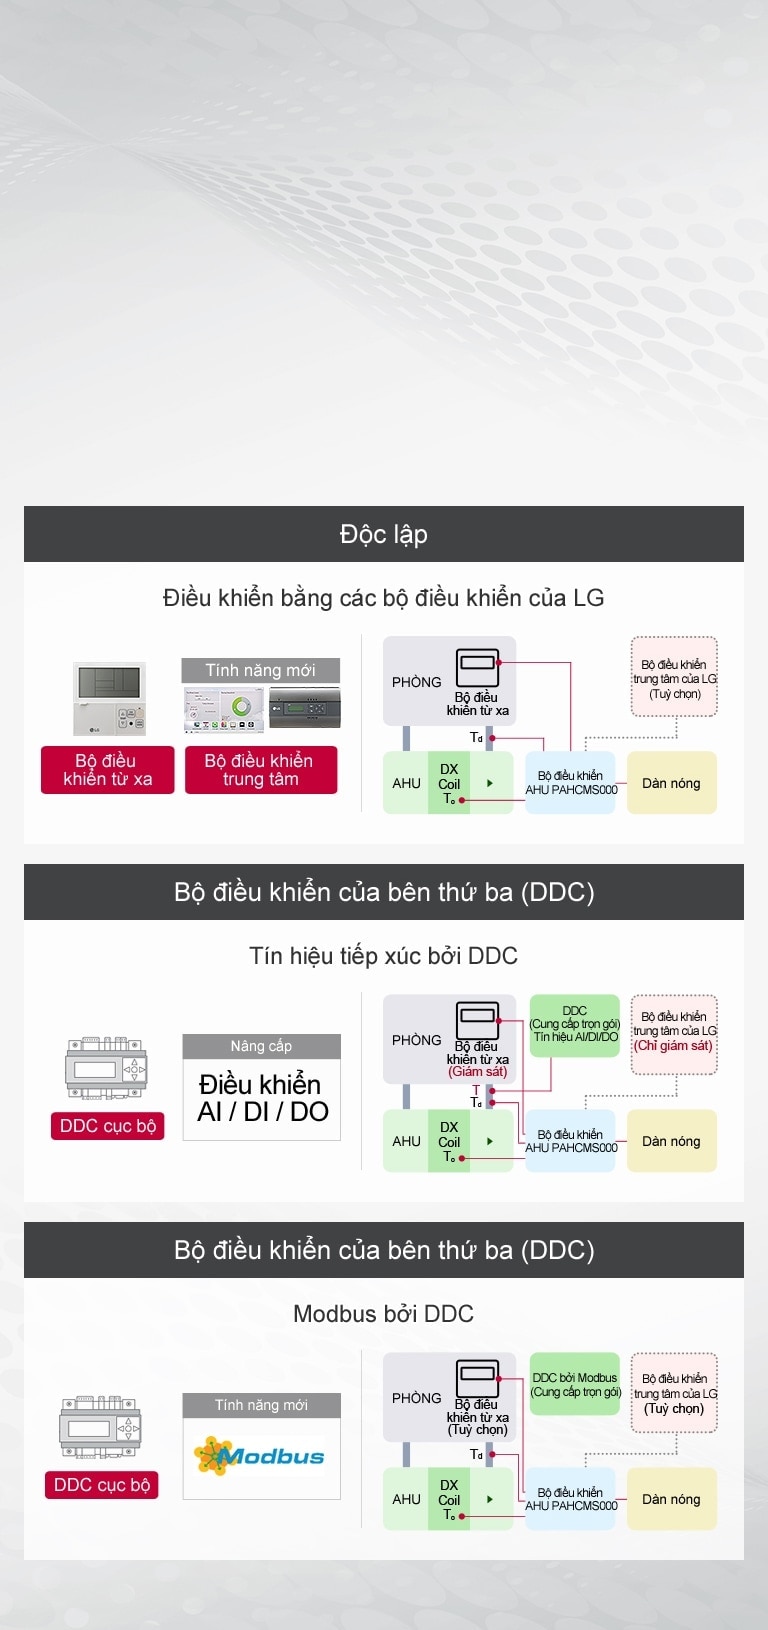 Sơ đồ mô tả Bộ xử lý không khí (AHU) của LG được liên kết với bộ điều khiển LG và bộ điều khiển của bên thứ ba thông qua tín hiệu của DDC và Modbus của DDC.